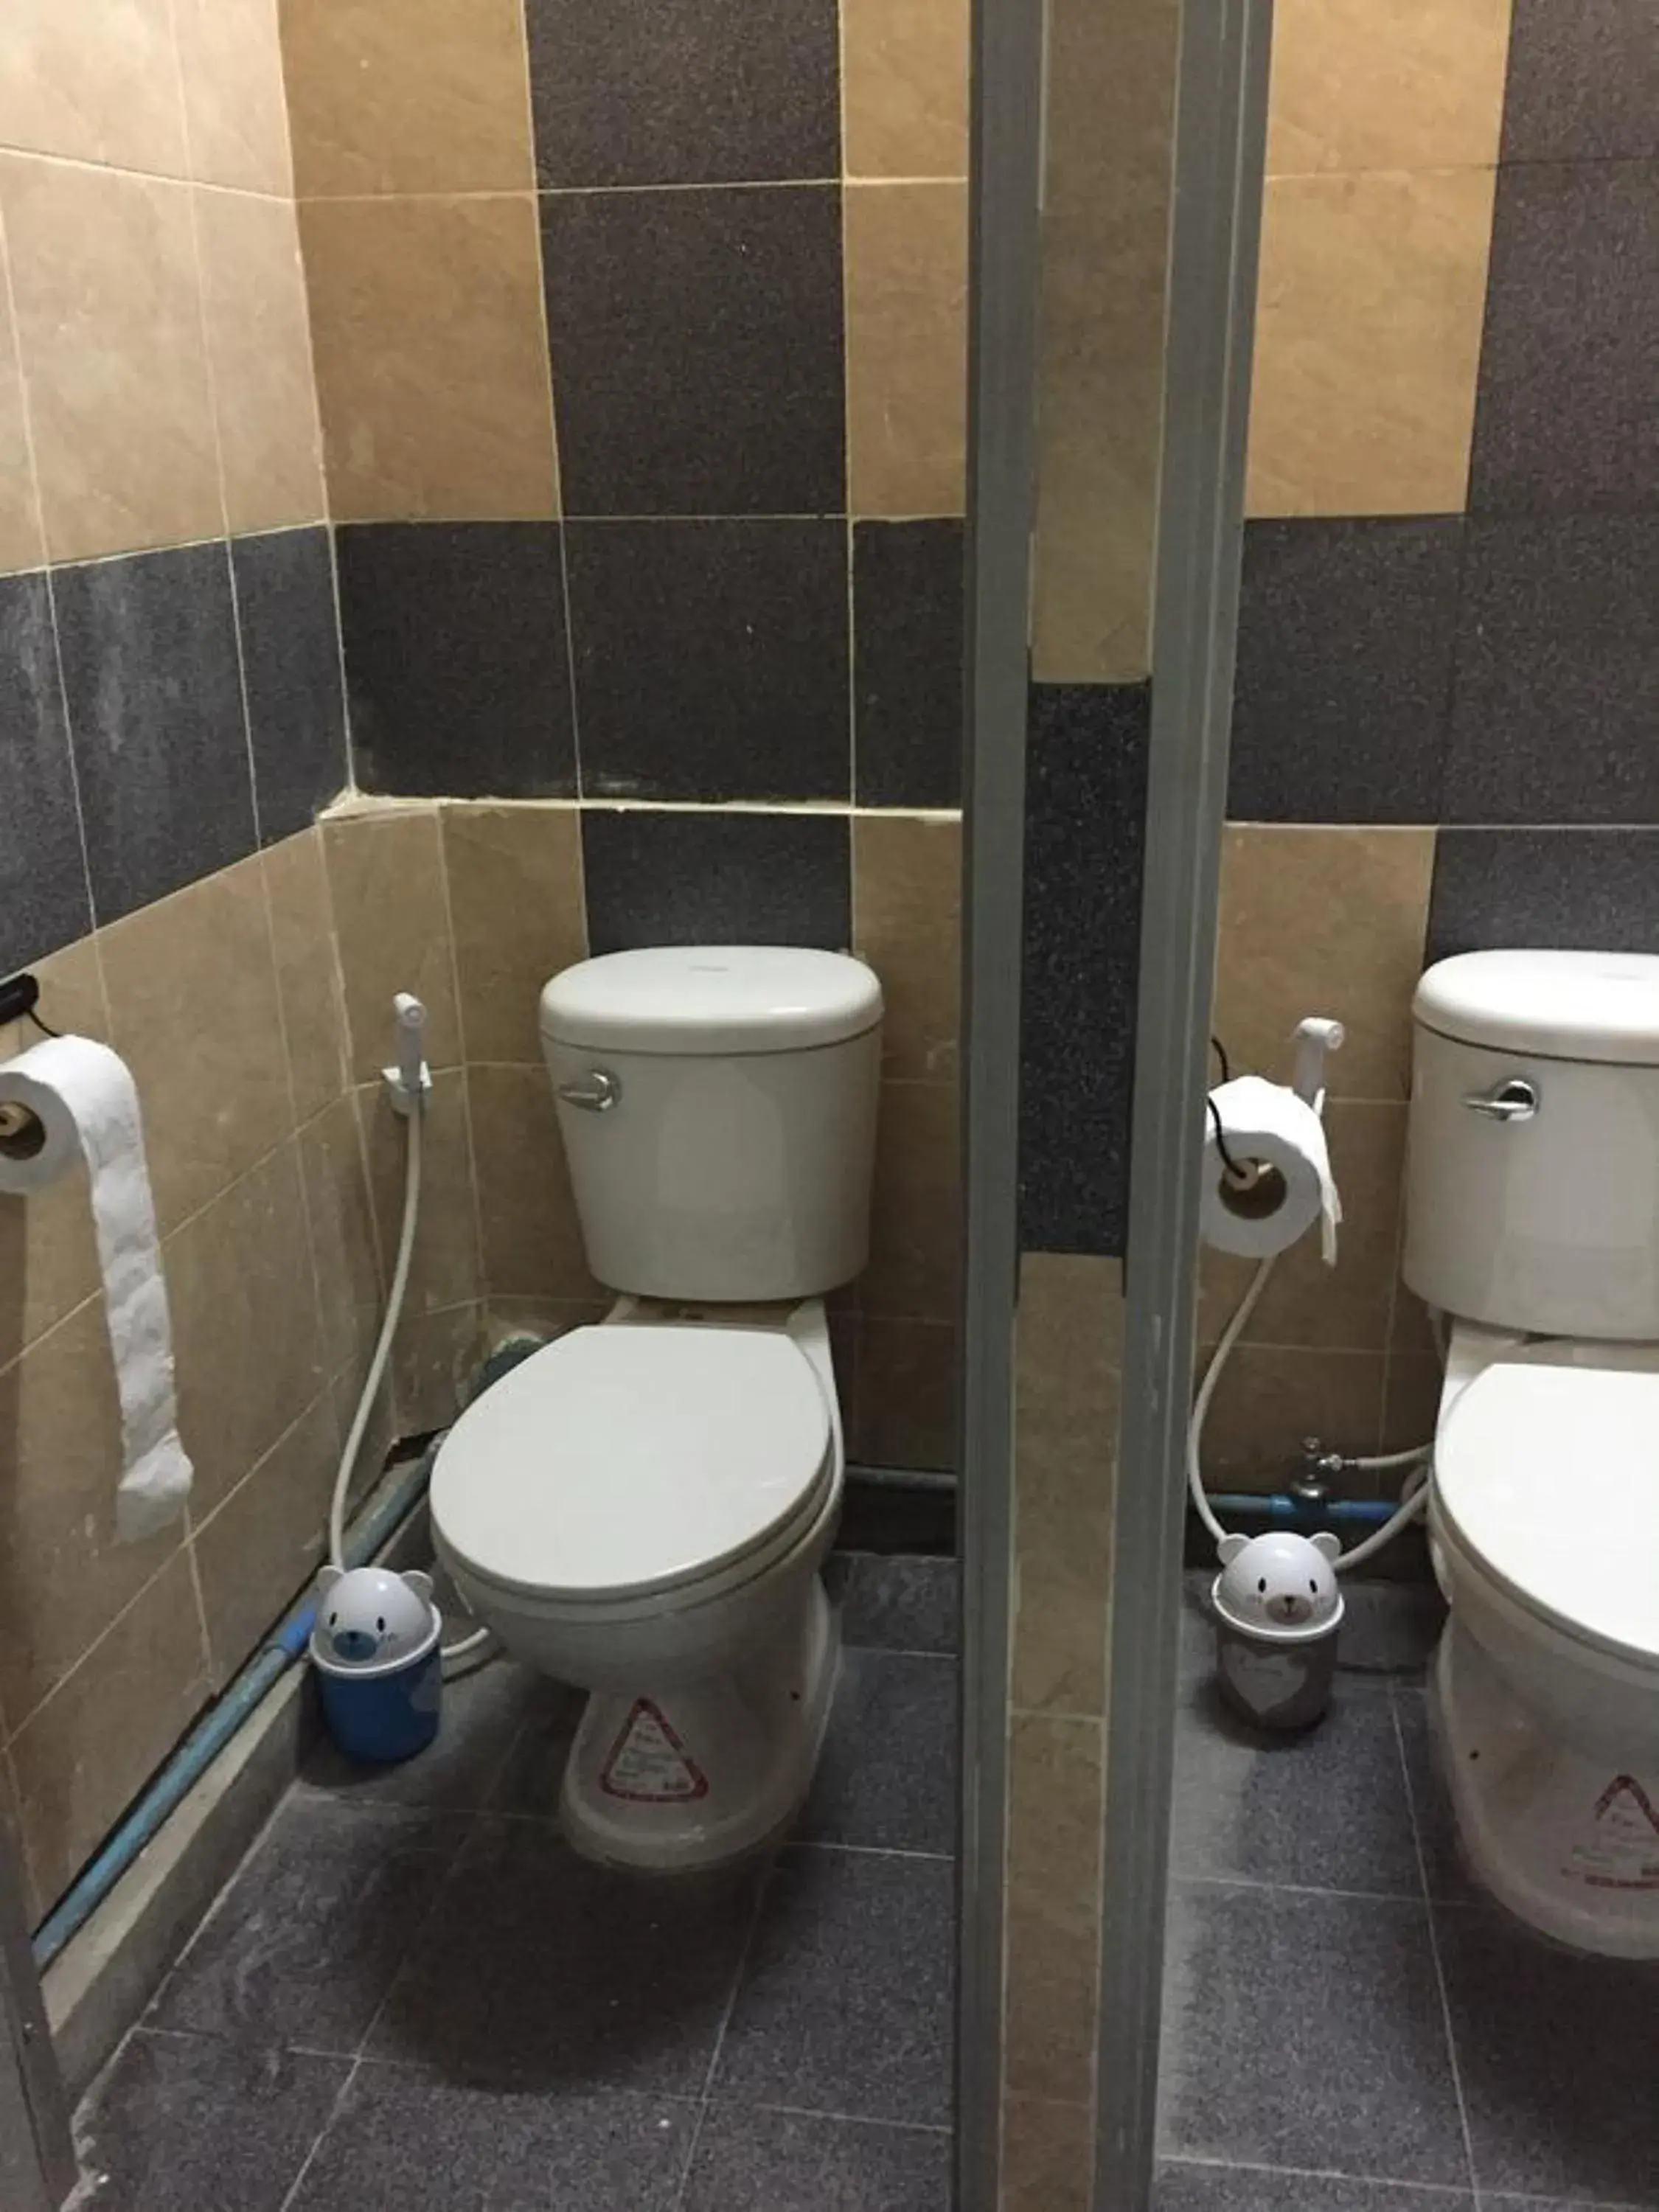 Bathroom in hostel24